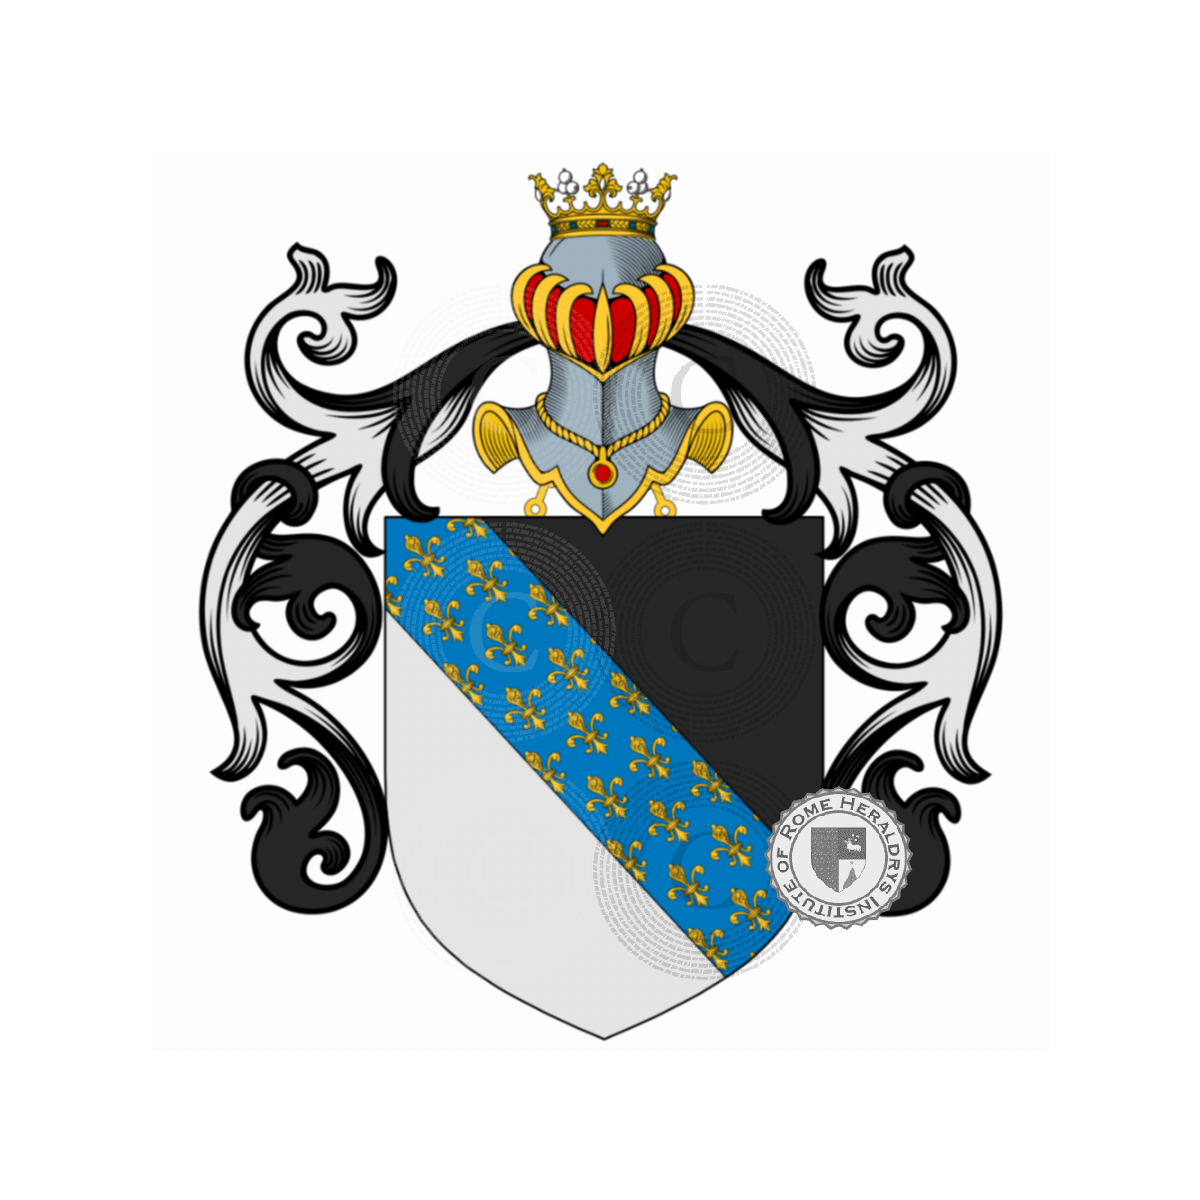 Escudo de la familiaVettori, Rettore,Vettorazzi,Vettore,Vettori del Drago